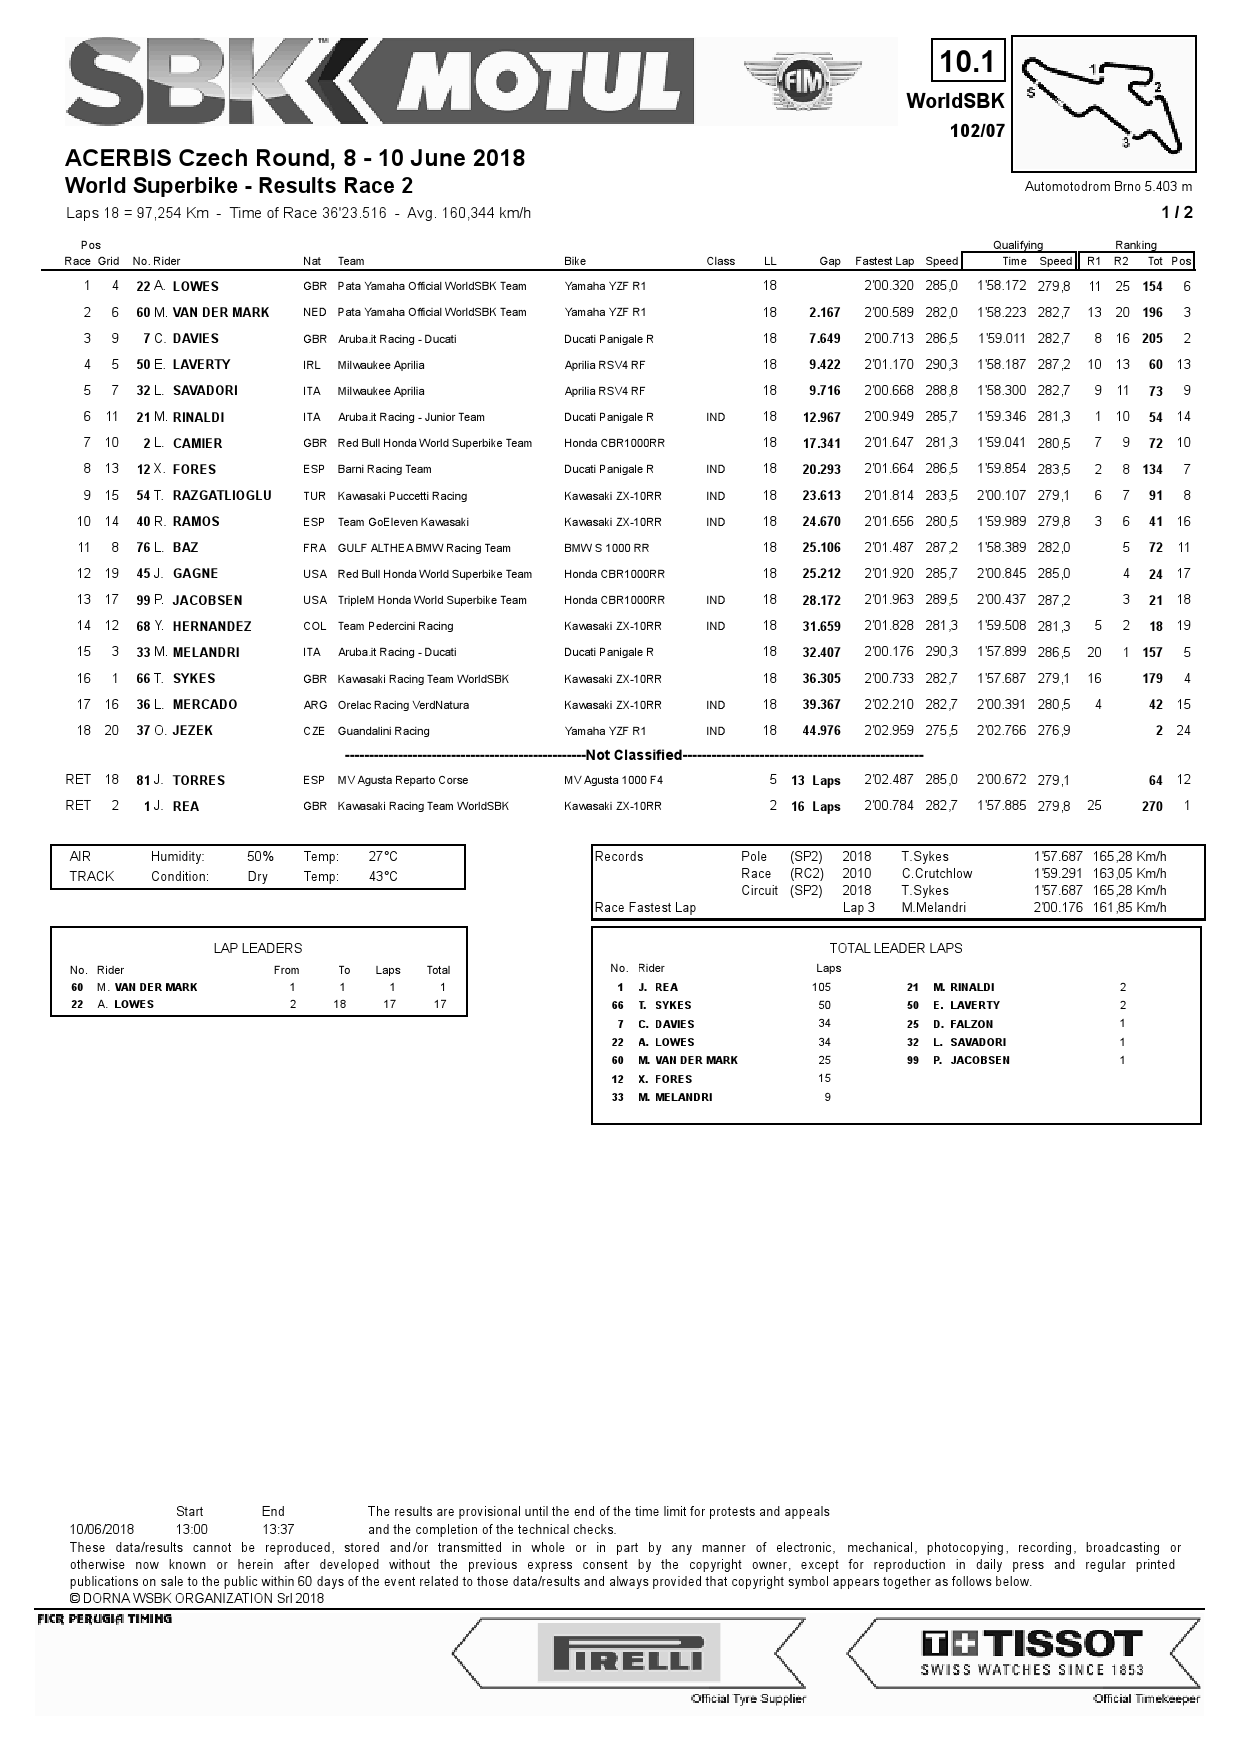 Результаты 2-й гонки 7-го этапа WorldSBK, Automotodrom Brno